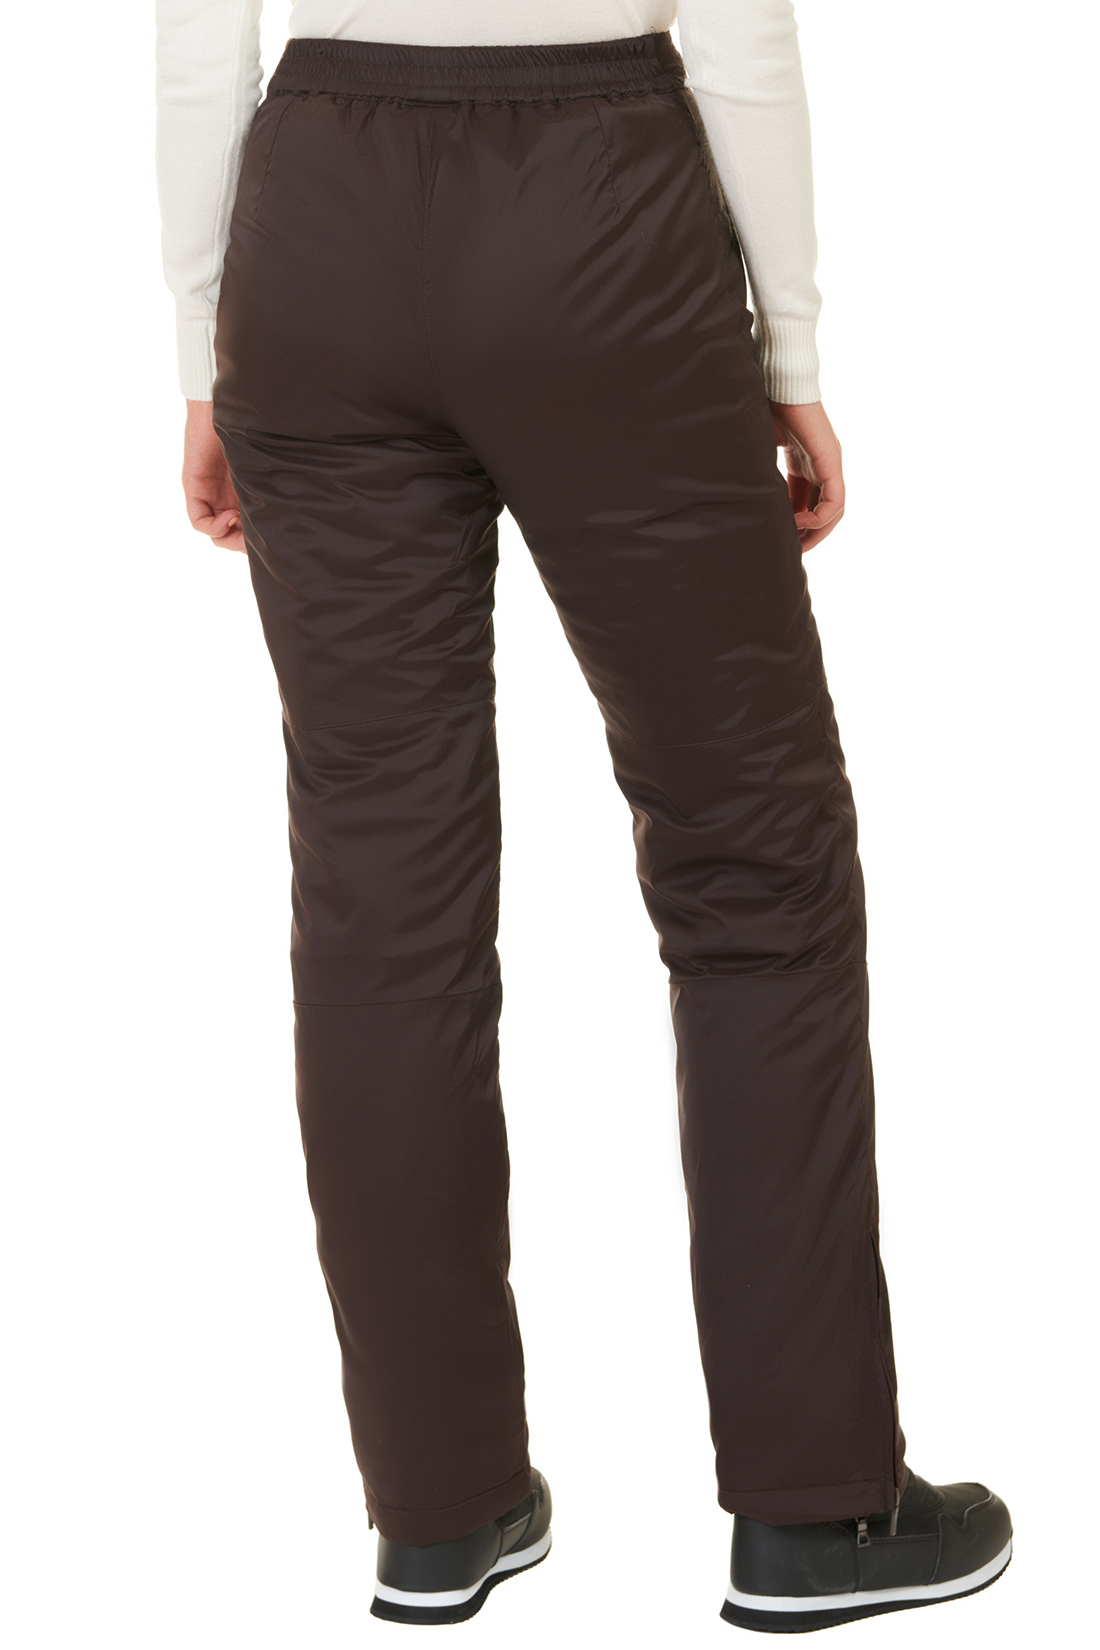 Утеплённые брюки с молниями (арт. baon B297505), размер XL, цвет коричневый Утеплённые брюки с молниями (арт. baon B297505) - фото 2